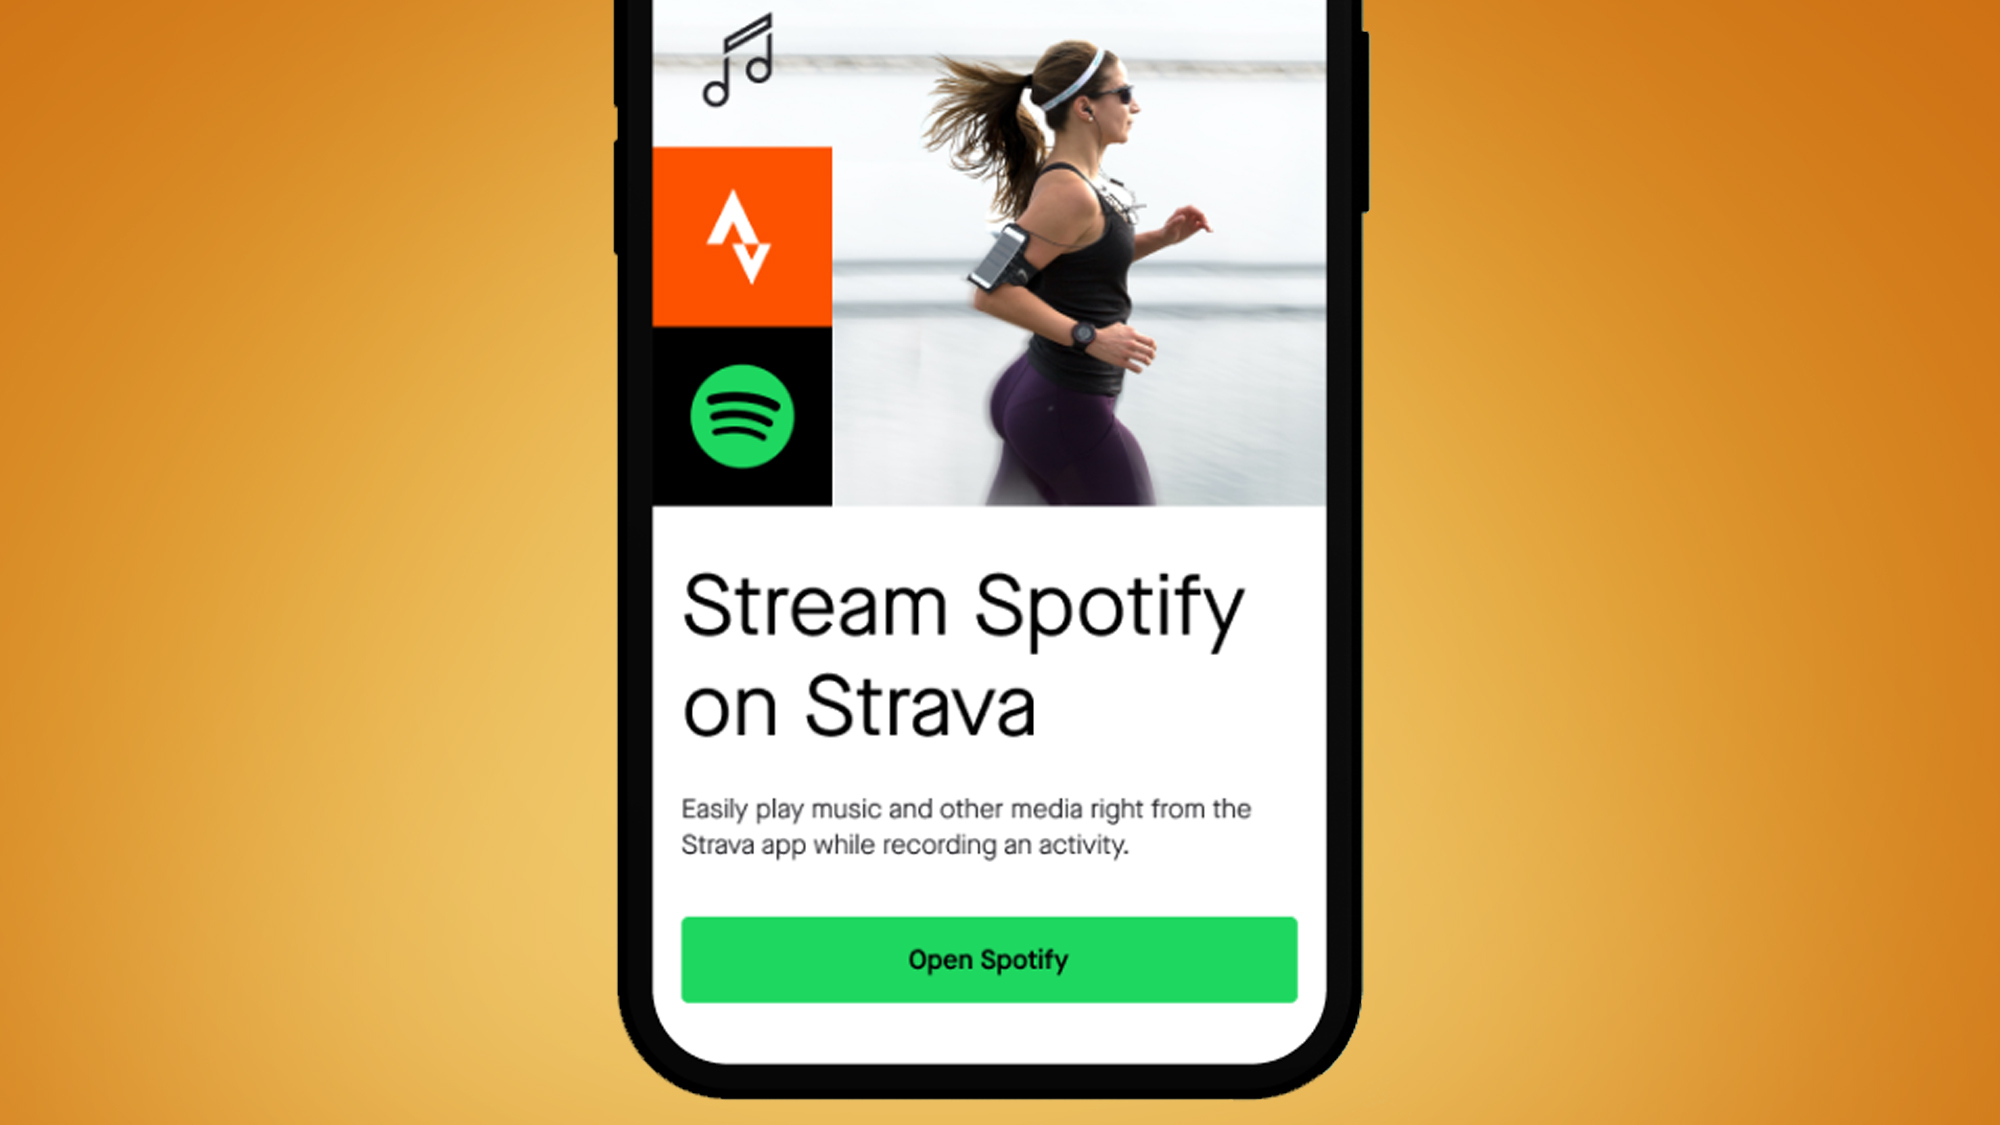 Un écran de téléphone sur fond orange montrant l'intégration de Strava et Spotify